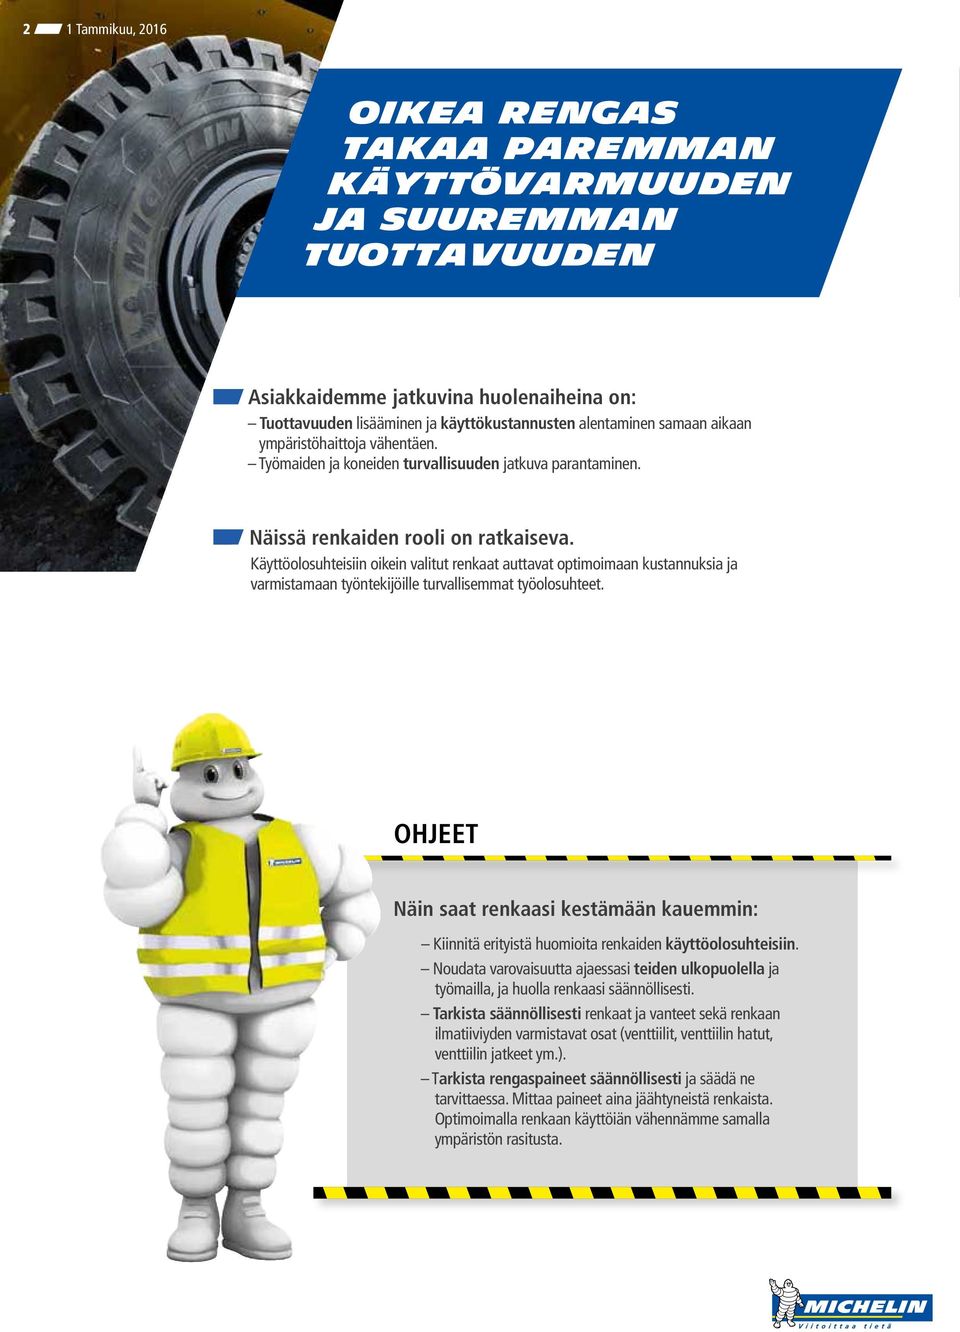 Käyttöolosuhteisiin oikein valitut renkaat auttavat optimoimaan kustannuksia ja varmistamaan työntekijöille turvallisemmat työolosuhteet.